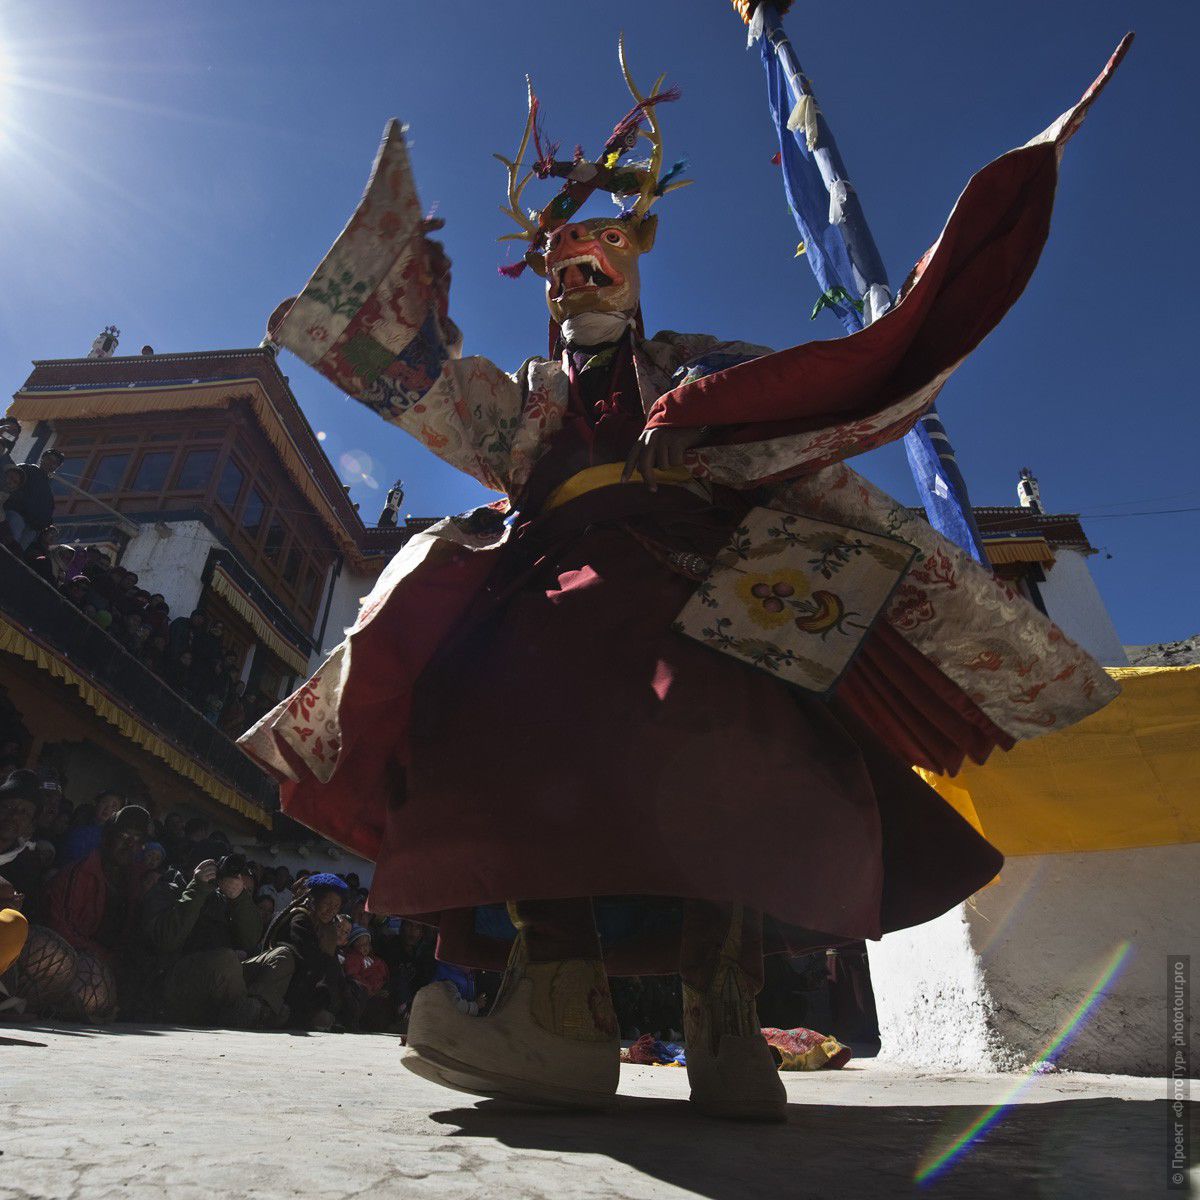 Фотография монаха, исполняющего Танец Оленя в монастыре Сток, фототур в Тибет.